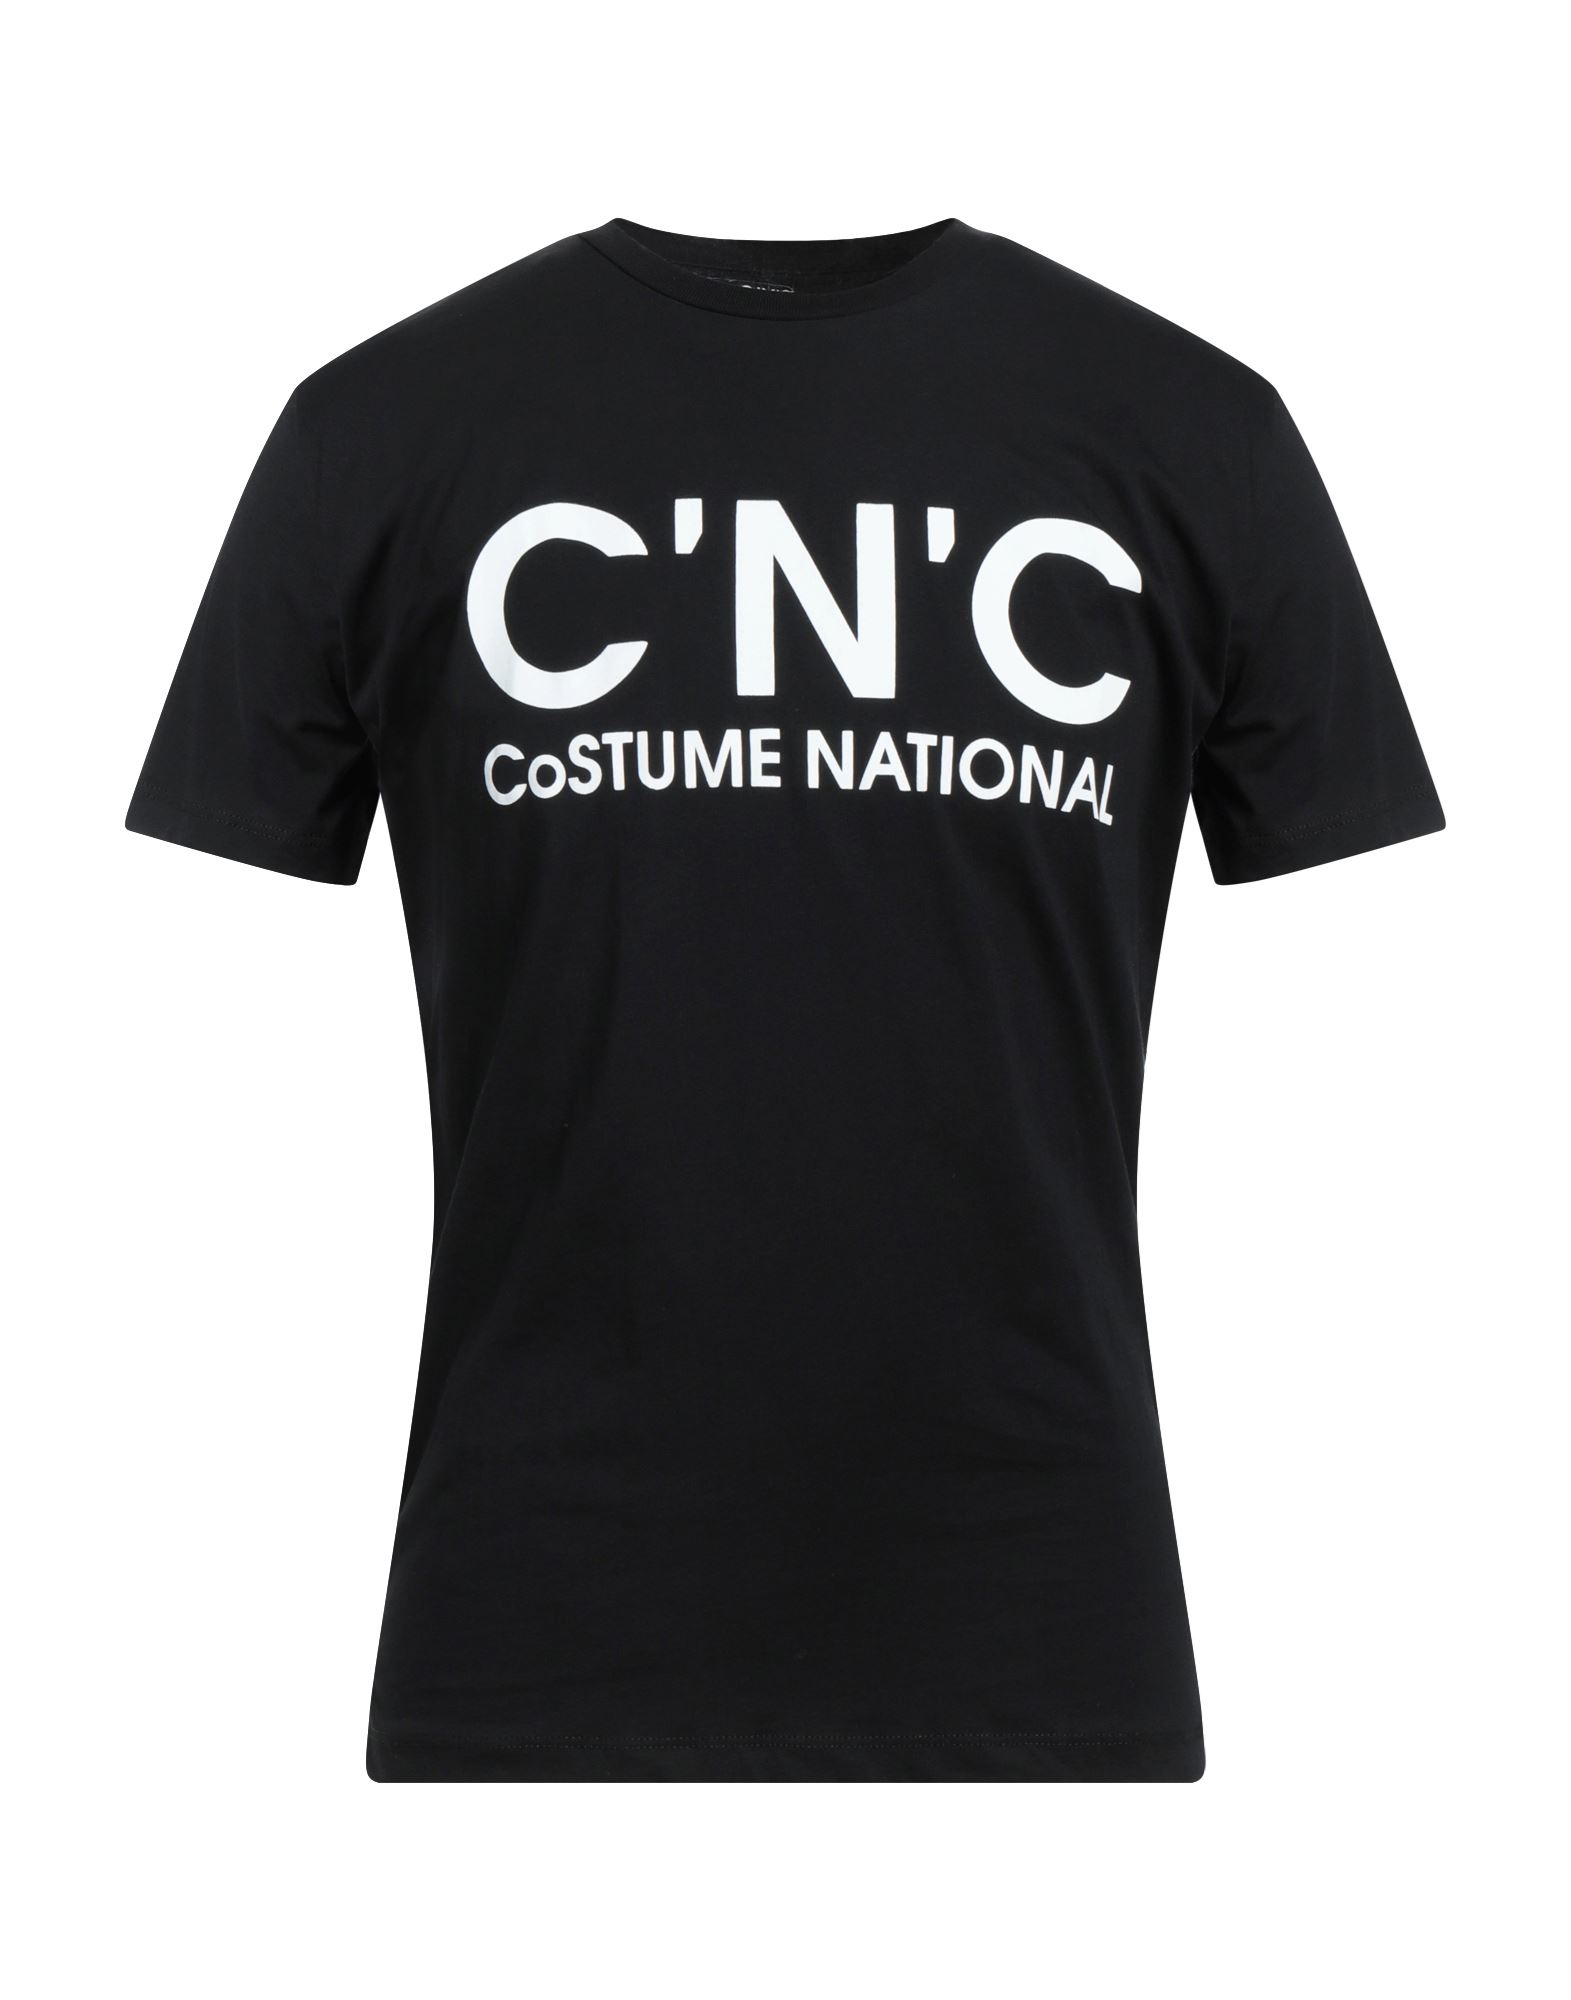 Shop C'n'c' Costume National Man T-shirt Black Size S Cotton